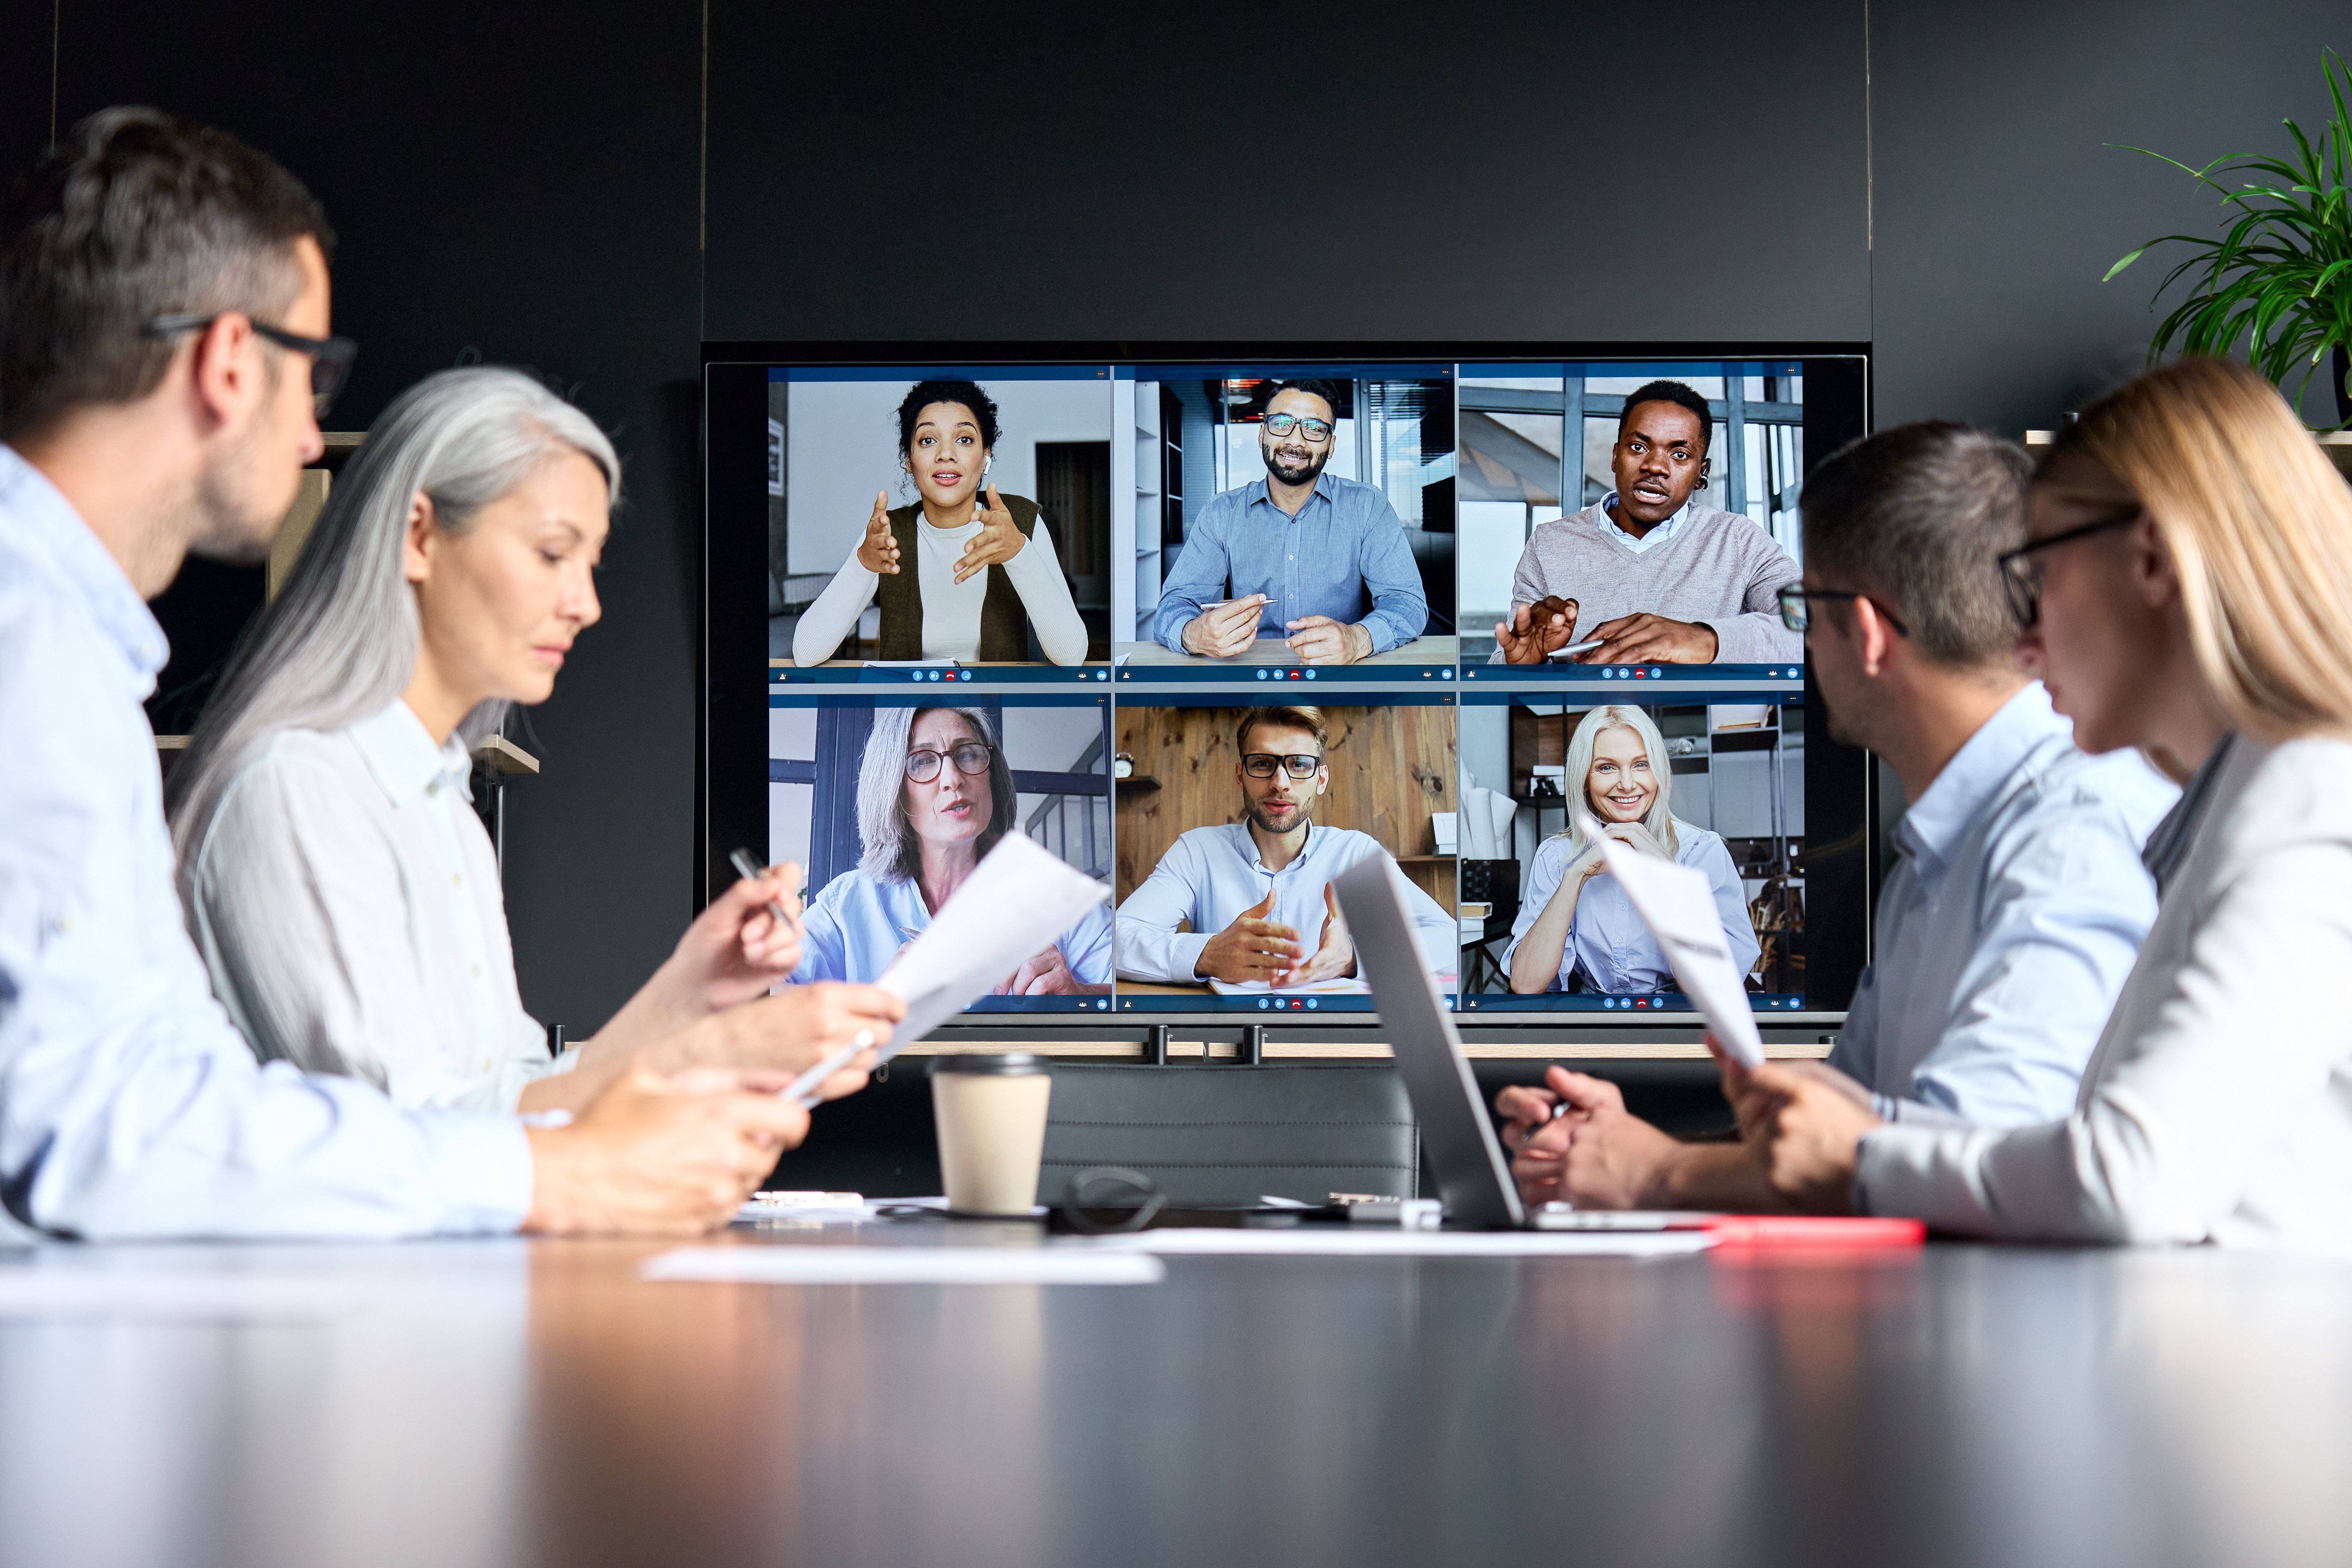 Virtual meeting between colleagues in board room